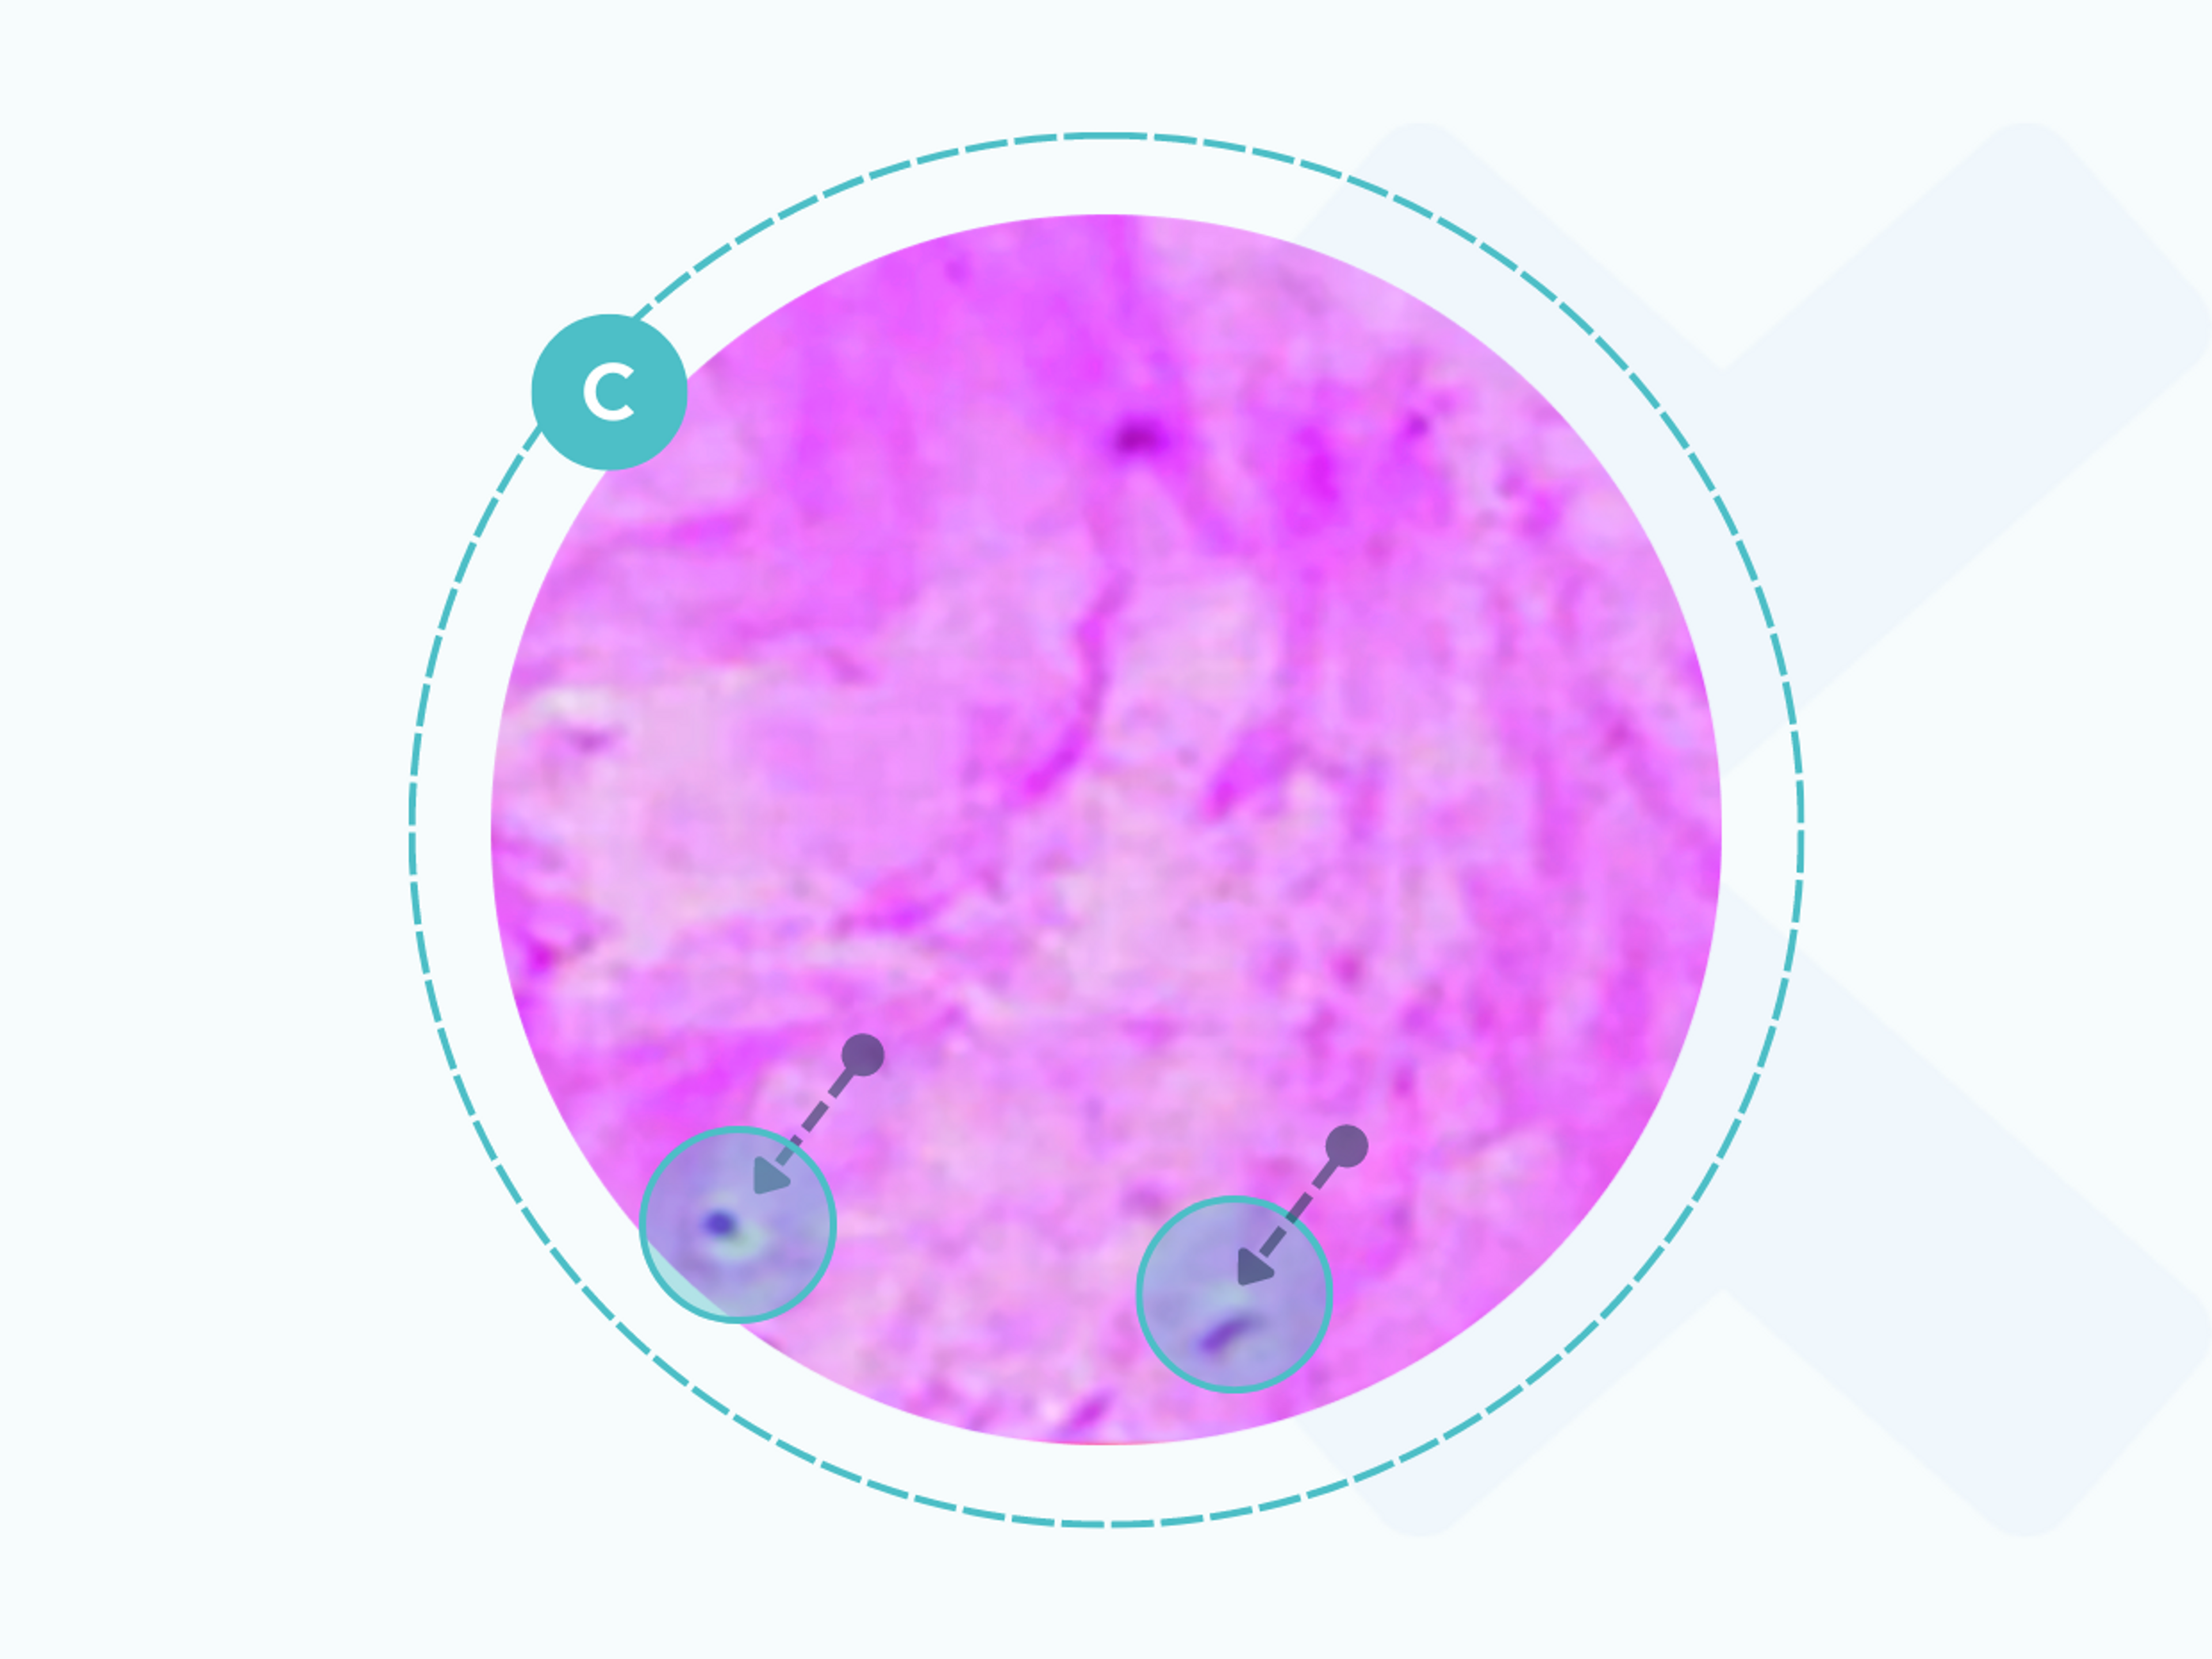 Bei einer Sehnenentzündung bewegen sich die Kollagenfasern voneinander weg und der Verband löst sich auf. Es gibt verschiedene Möglichkeiten, das zu behandeln.